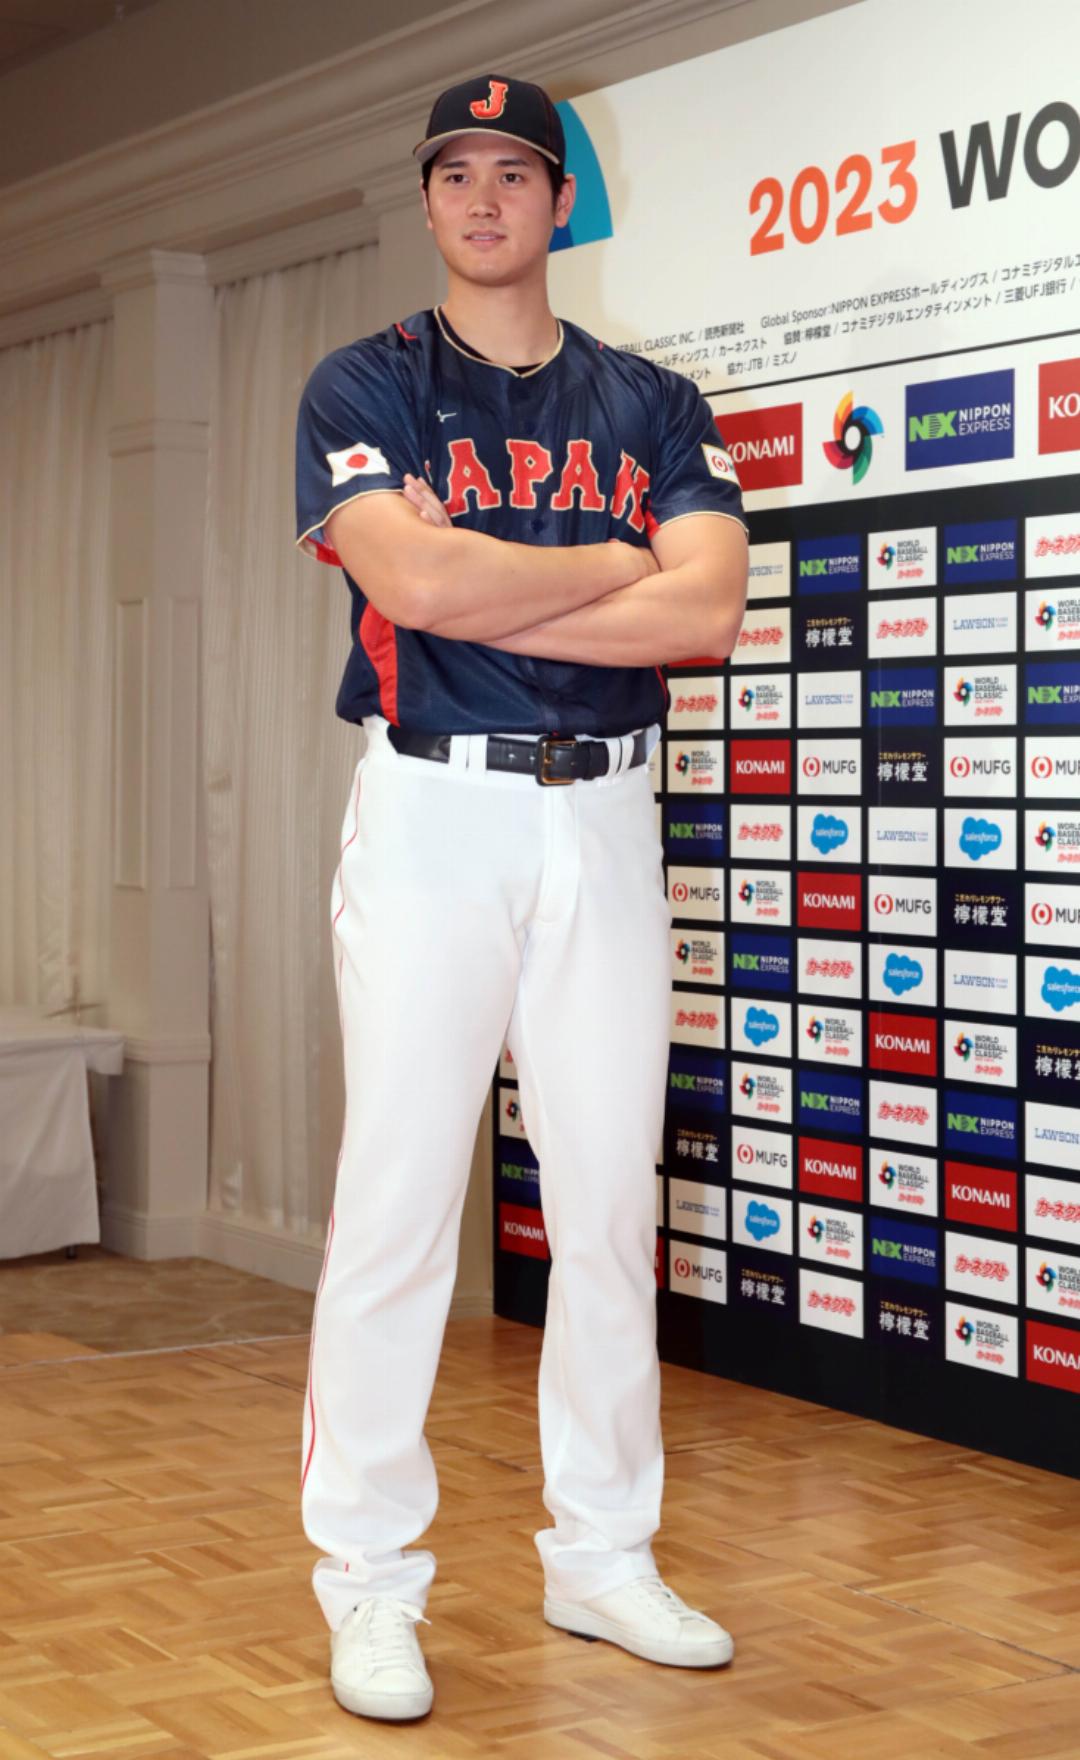 佐々木朗希 WBC2023 侍ジャパン レプリカユニフォーム ホーム Sサイズ